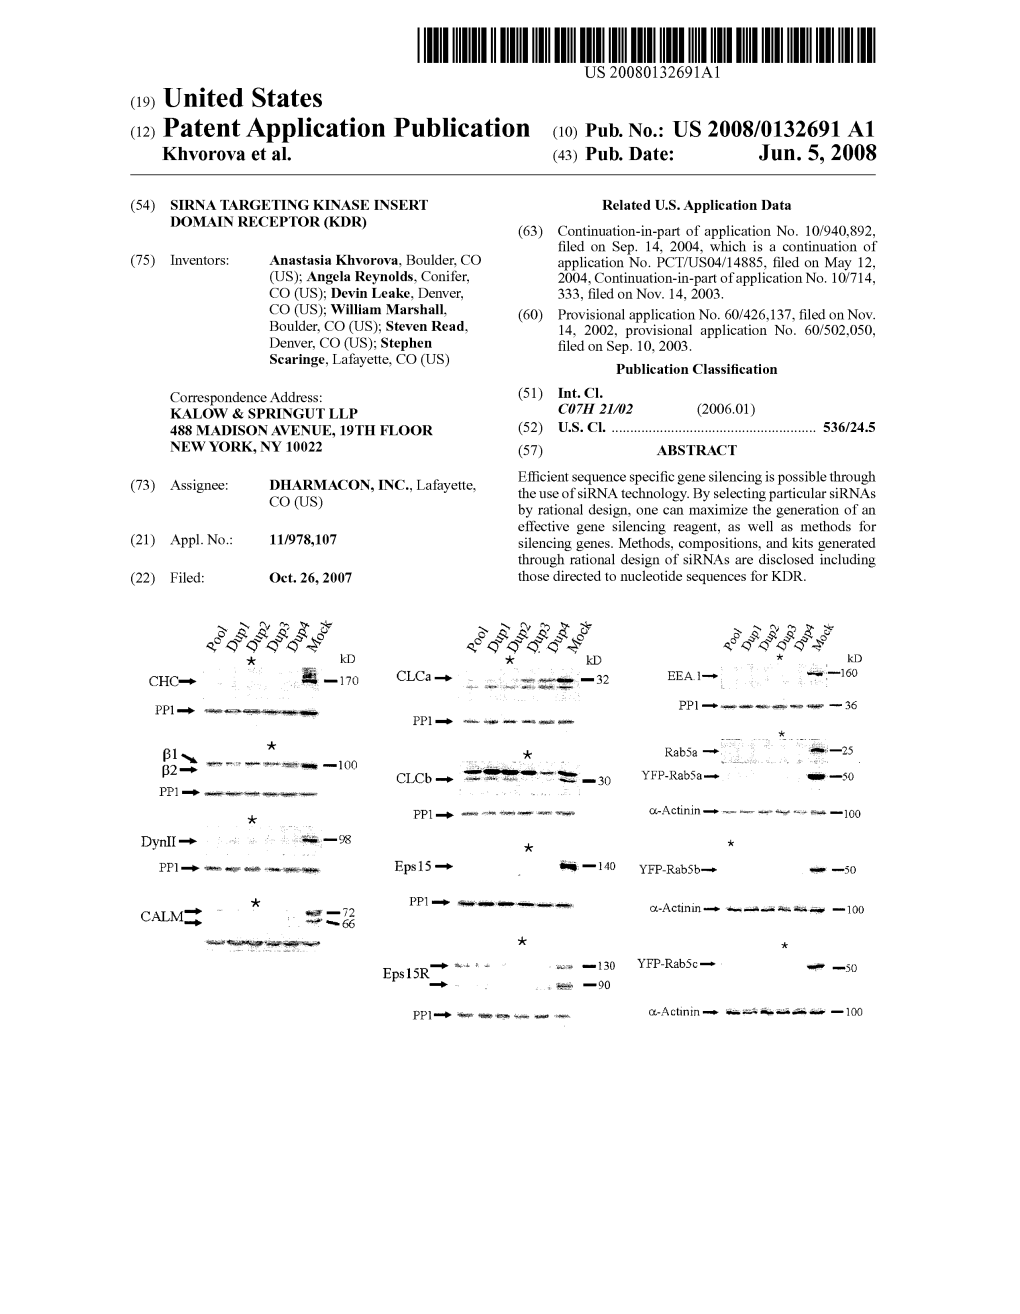 (12) Patent Application Publication (10) Pub. No.: US 2008/0132691 A1 Khvorova Et Al